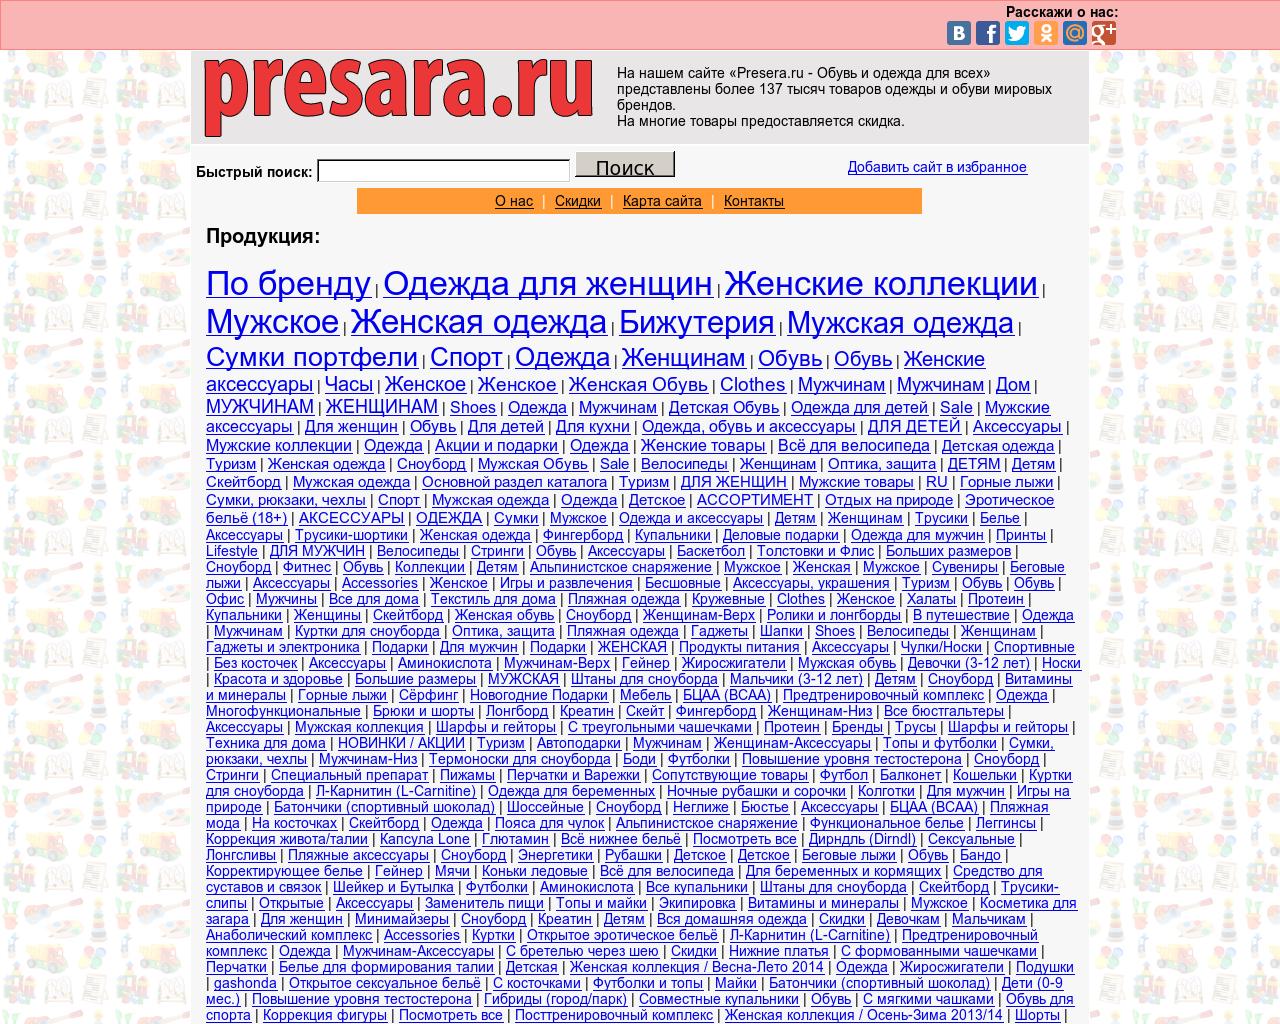 Изображение сайта presara.ru в разрешении 1280x1024